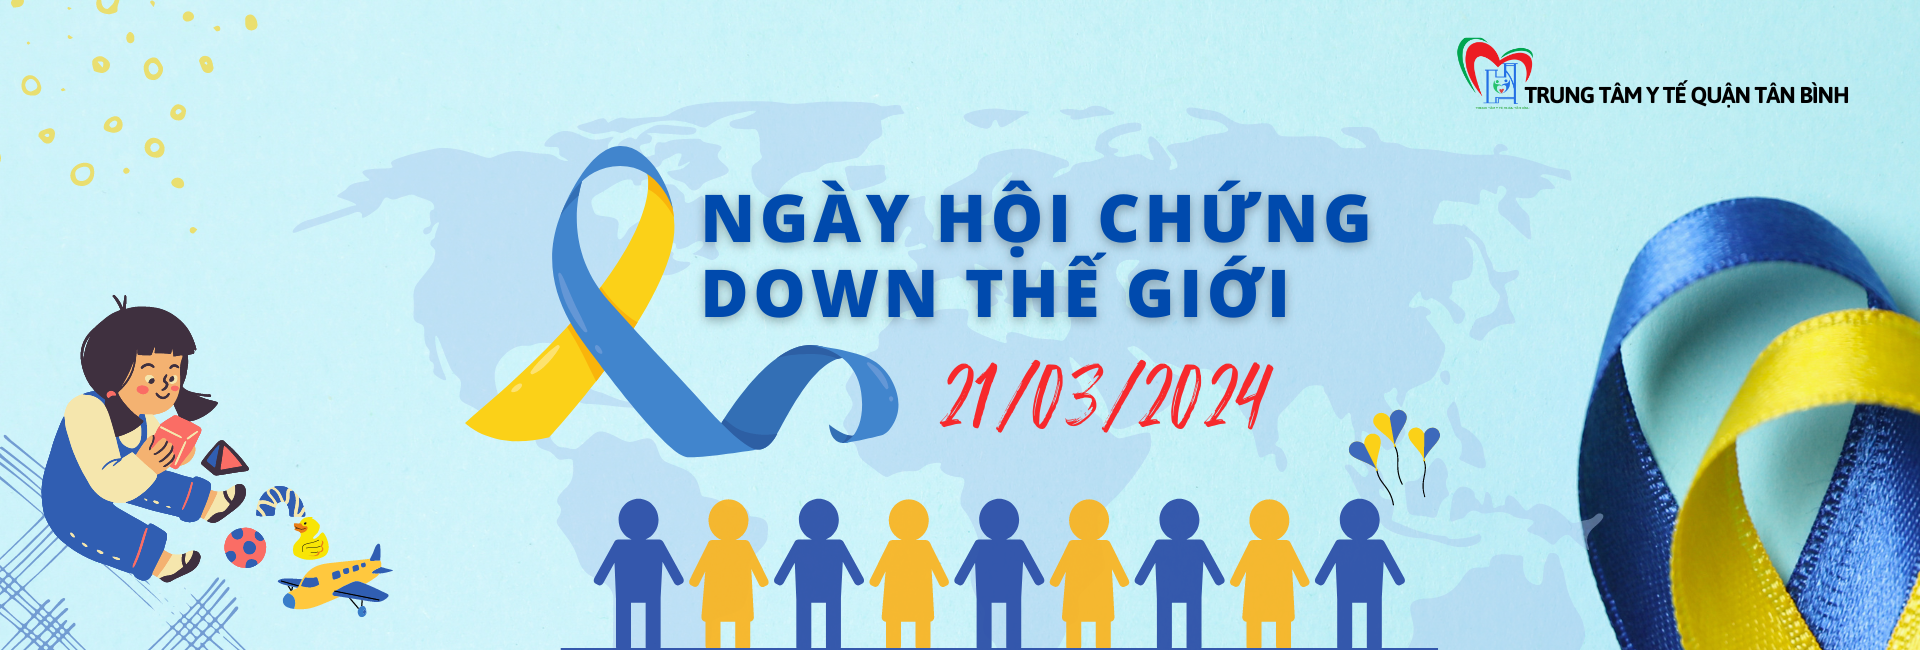 Ngày Hội chứng Down thế giới - World Down Syndrome day (21/03/2024)